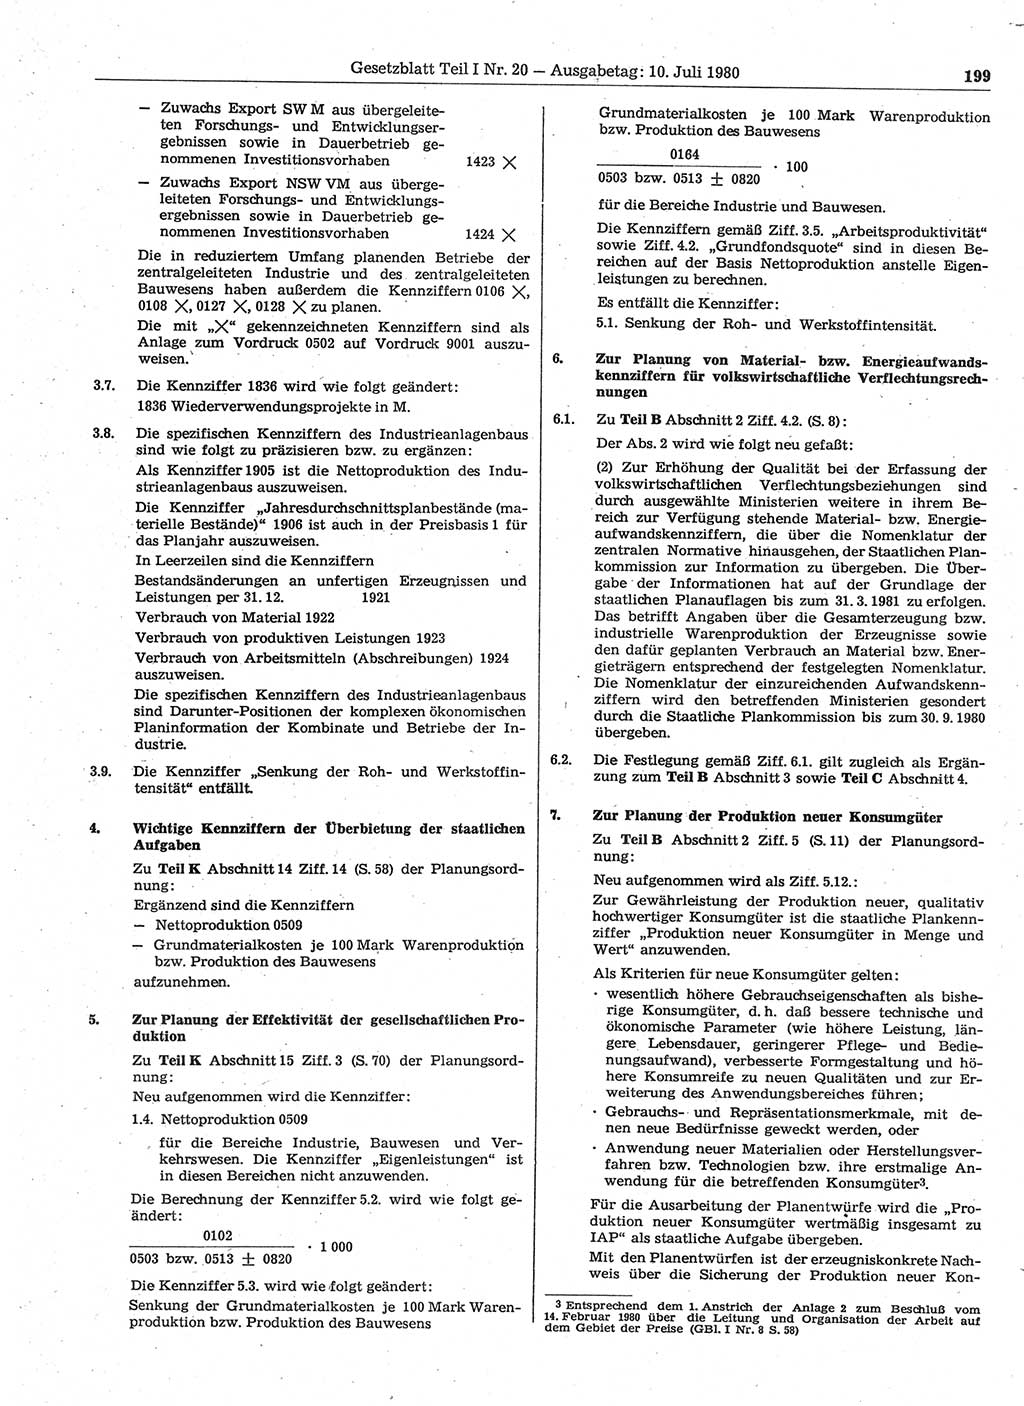 Gesetzblatt (GBl.) der Deutschen Demokratischen Republik (DDR) Teil Ⅰ 1980, Seite 199 (GBl. DDR Ⅰ 1980, S. 199)